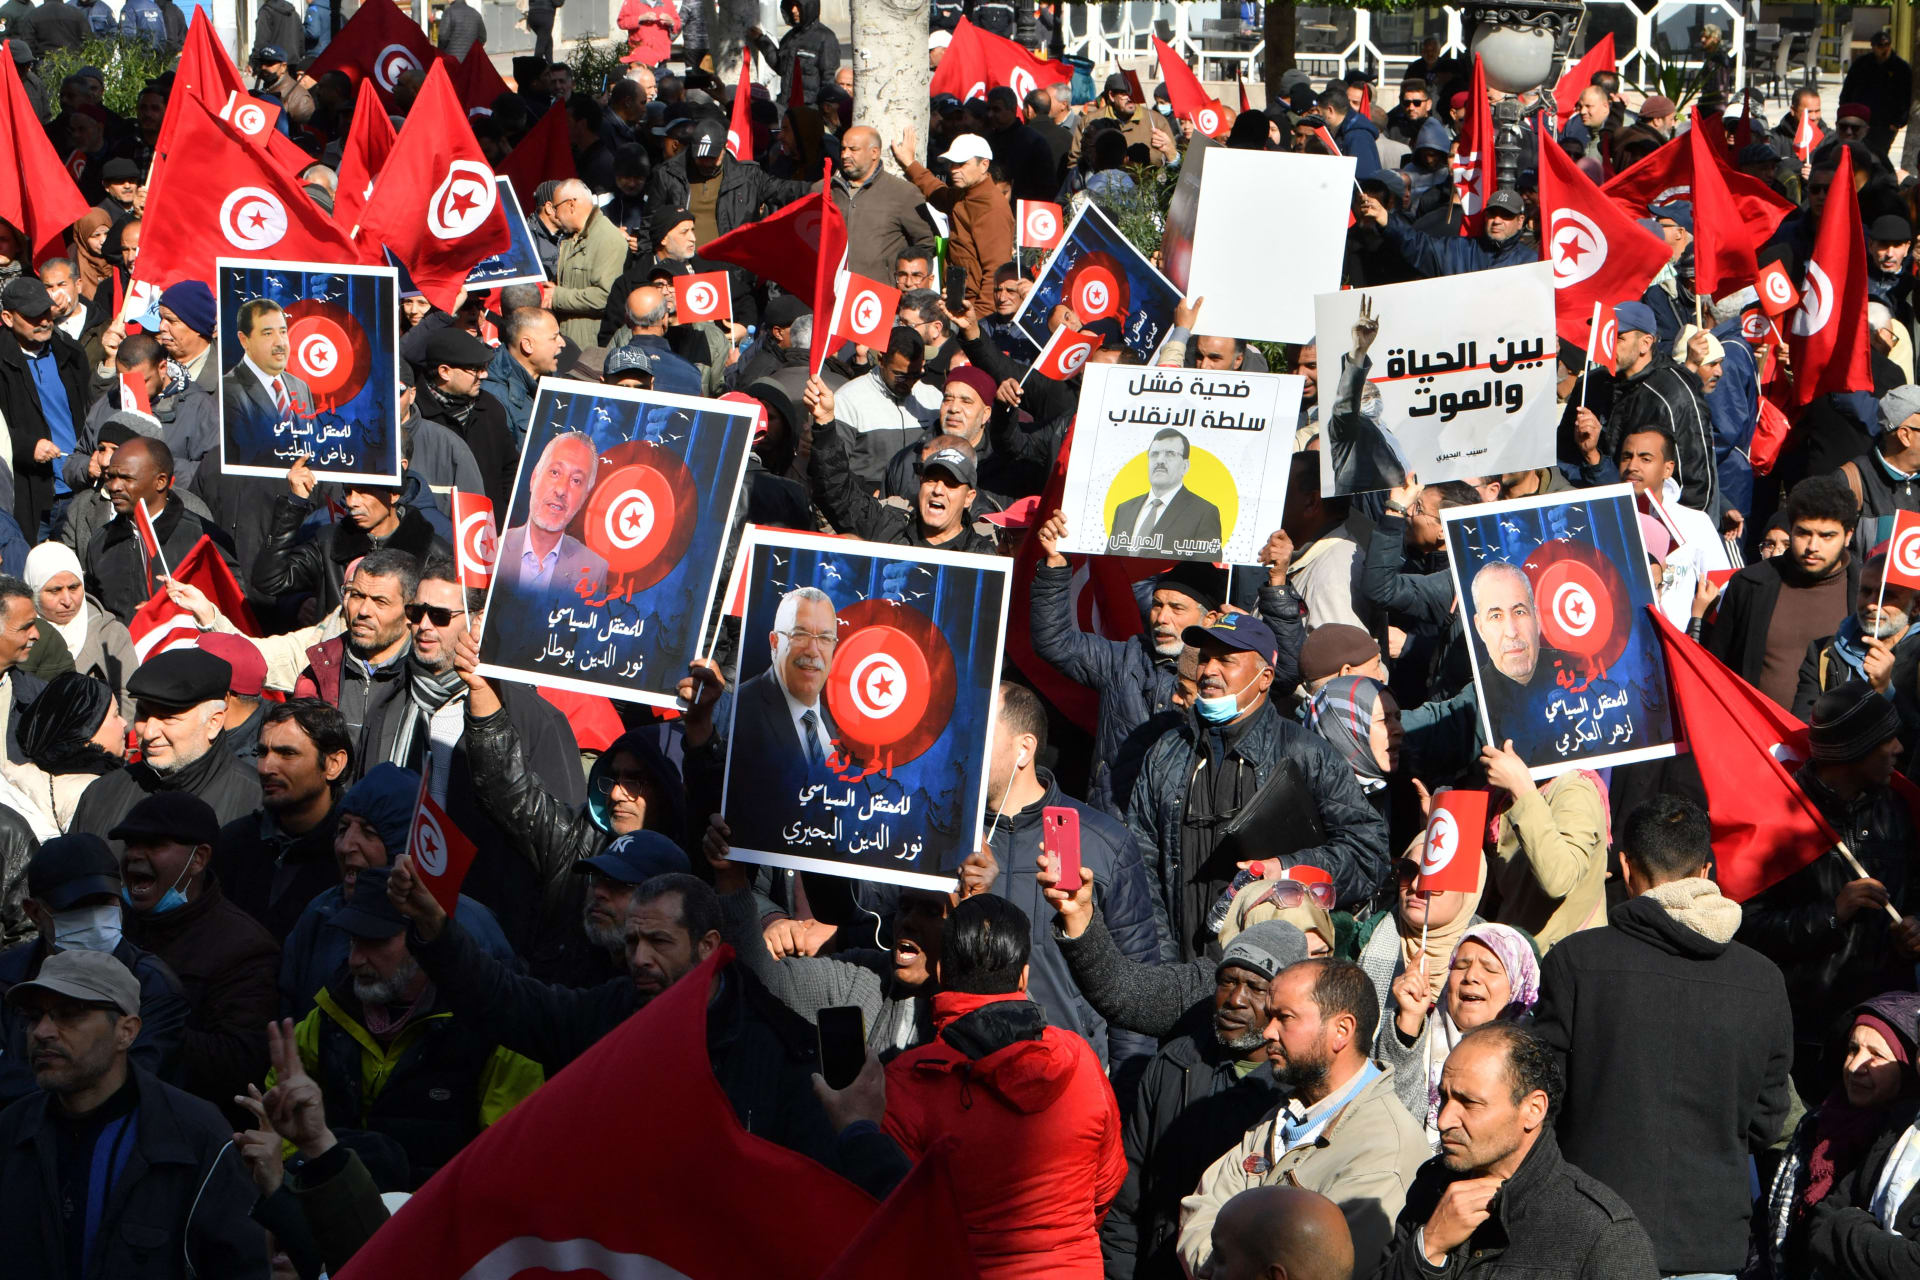 المعارضة التونسية تعلن رفضها البرلمان الجديد وتتمسك بدستور 2014